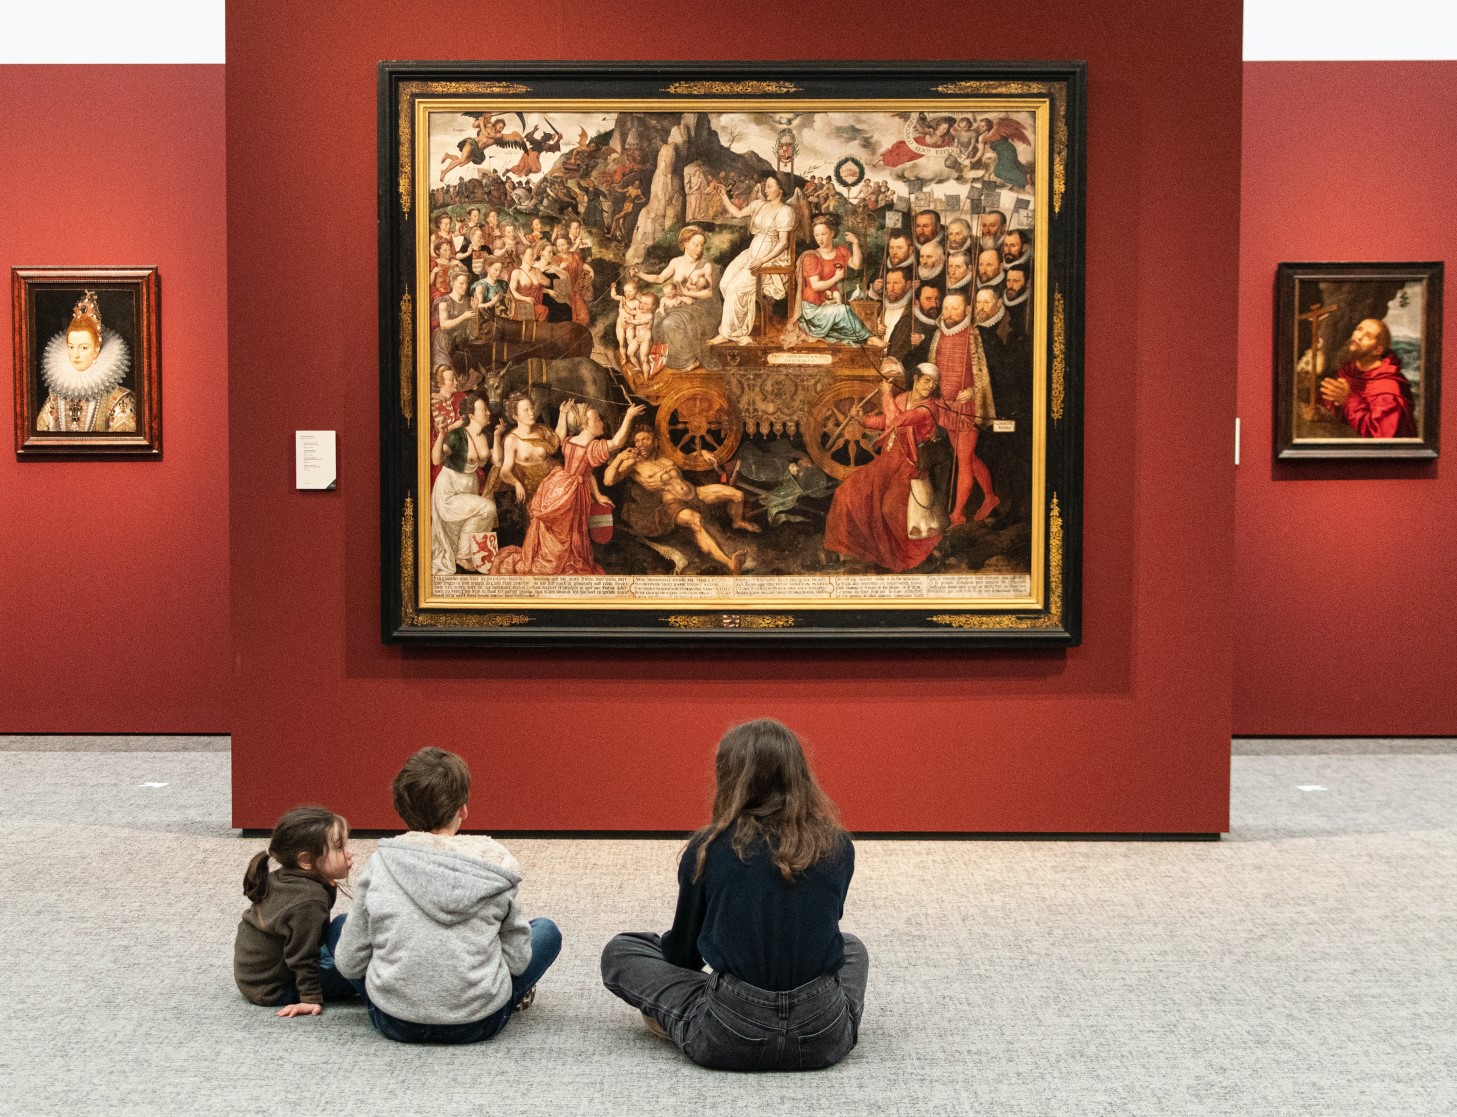 Bezoekers in museum kijken naar schilderij